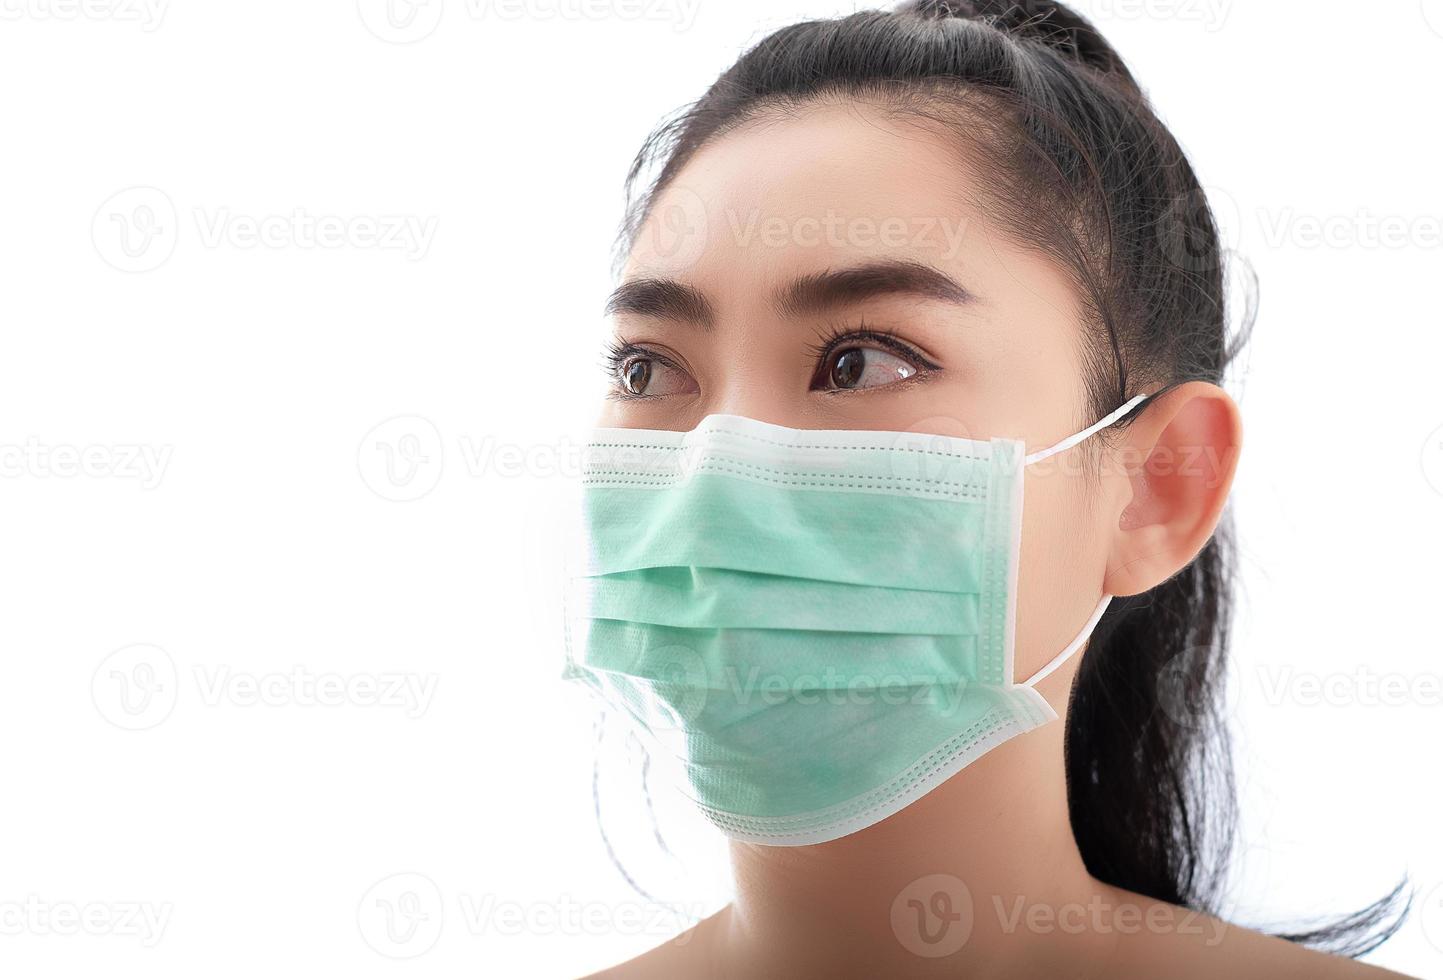 bella giovane donna asiatica che indossa una maschera medica per proteggersi dalle malattie respiratorie trasportate dall'aria come l'influenza covid-19 pm2.5 polvere e smog, concetto di infezione da virus della sicurezza delle donne foto